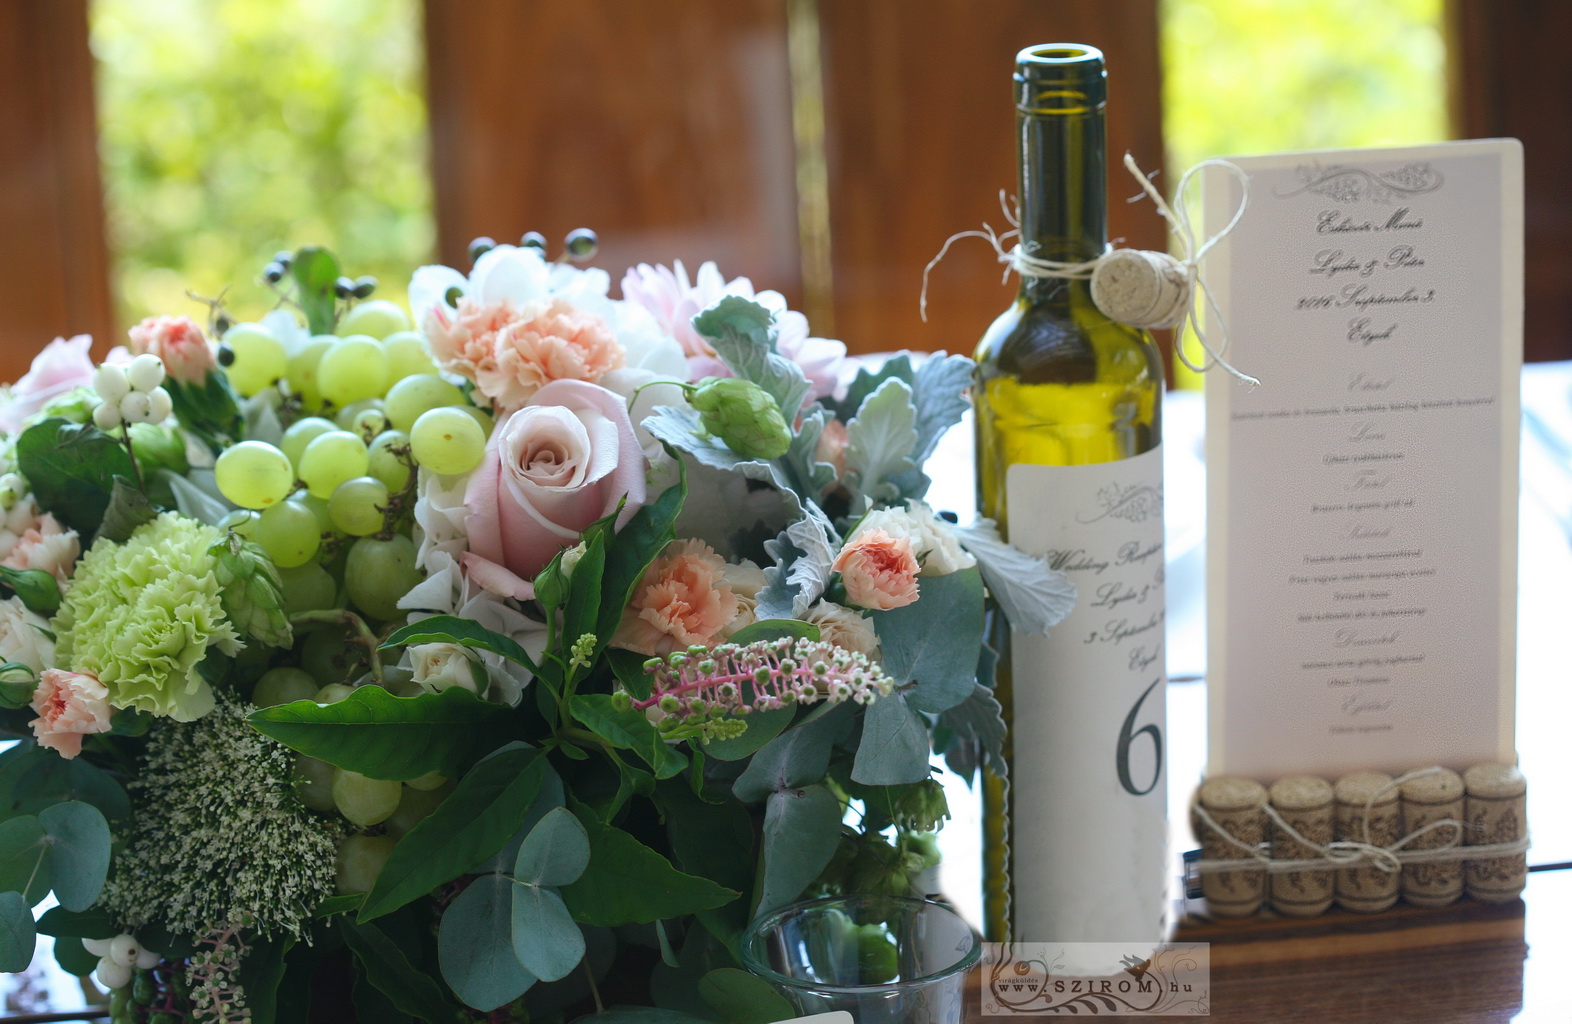 Virágküldés Budapest - Esküvői asztaldísz borászati, szőlős stílus, Haraszthy Vallejo Etyek